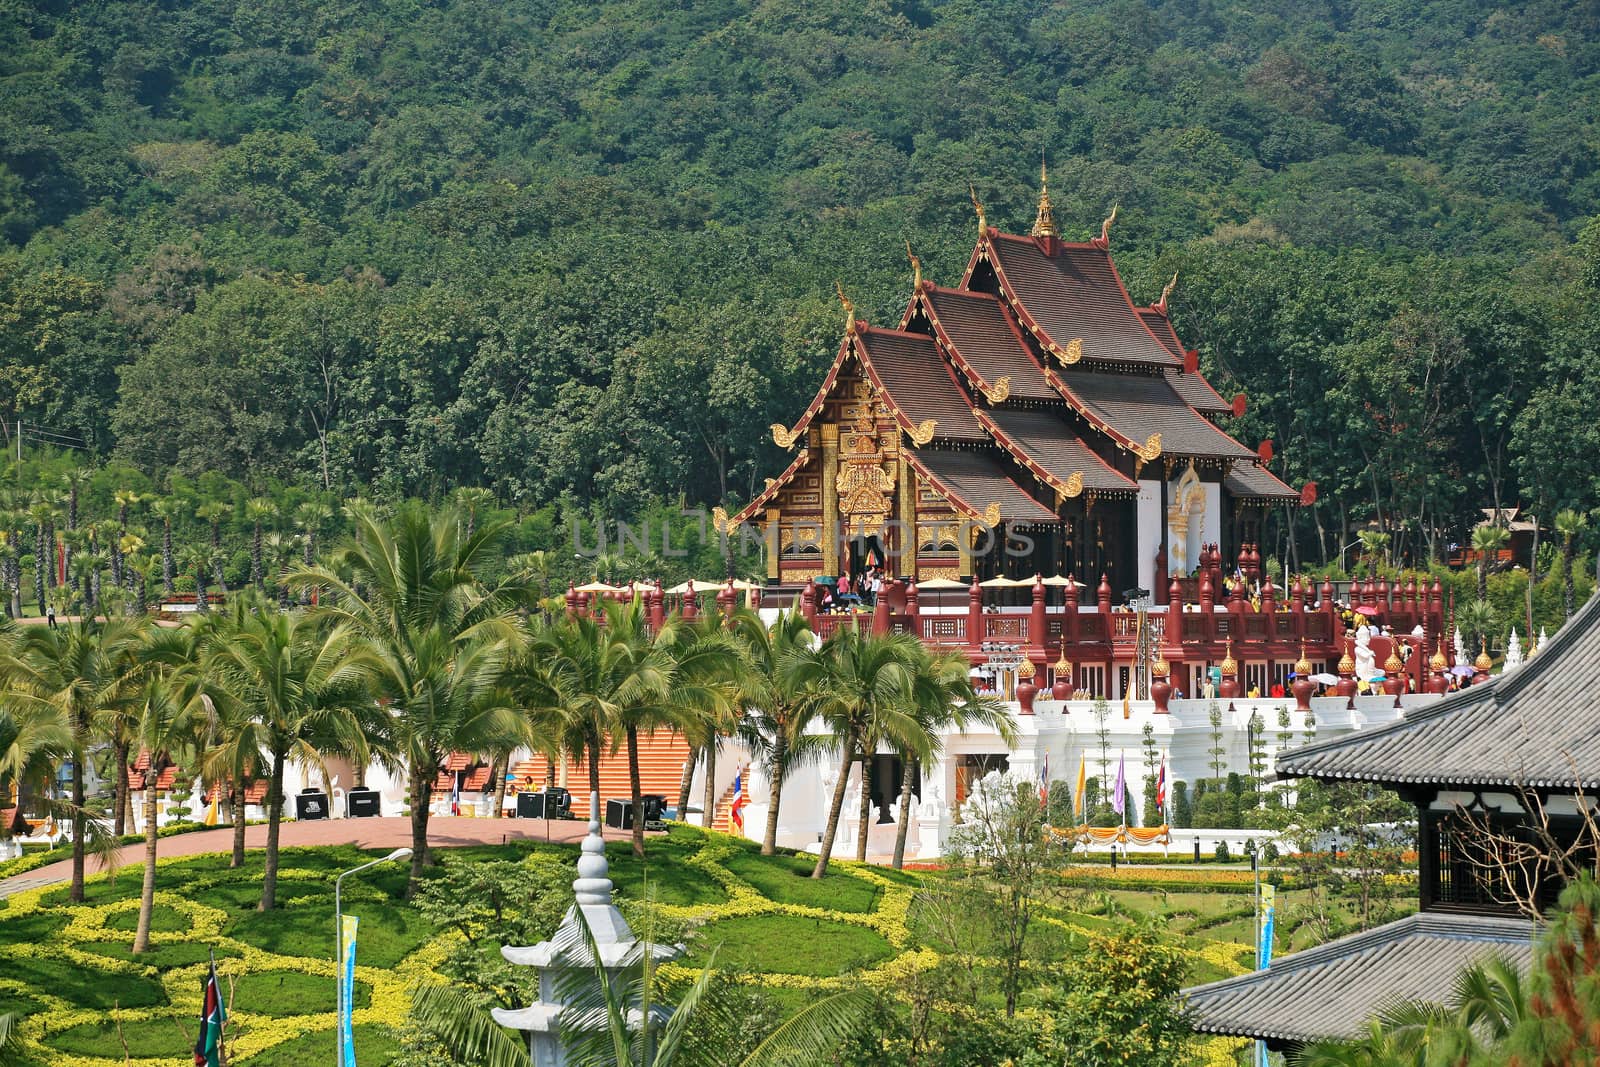 Royal Pavilion (Ho Kum Luang) at Royal Flora Expo, Chiang Mai, T by think4photop